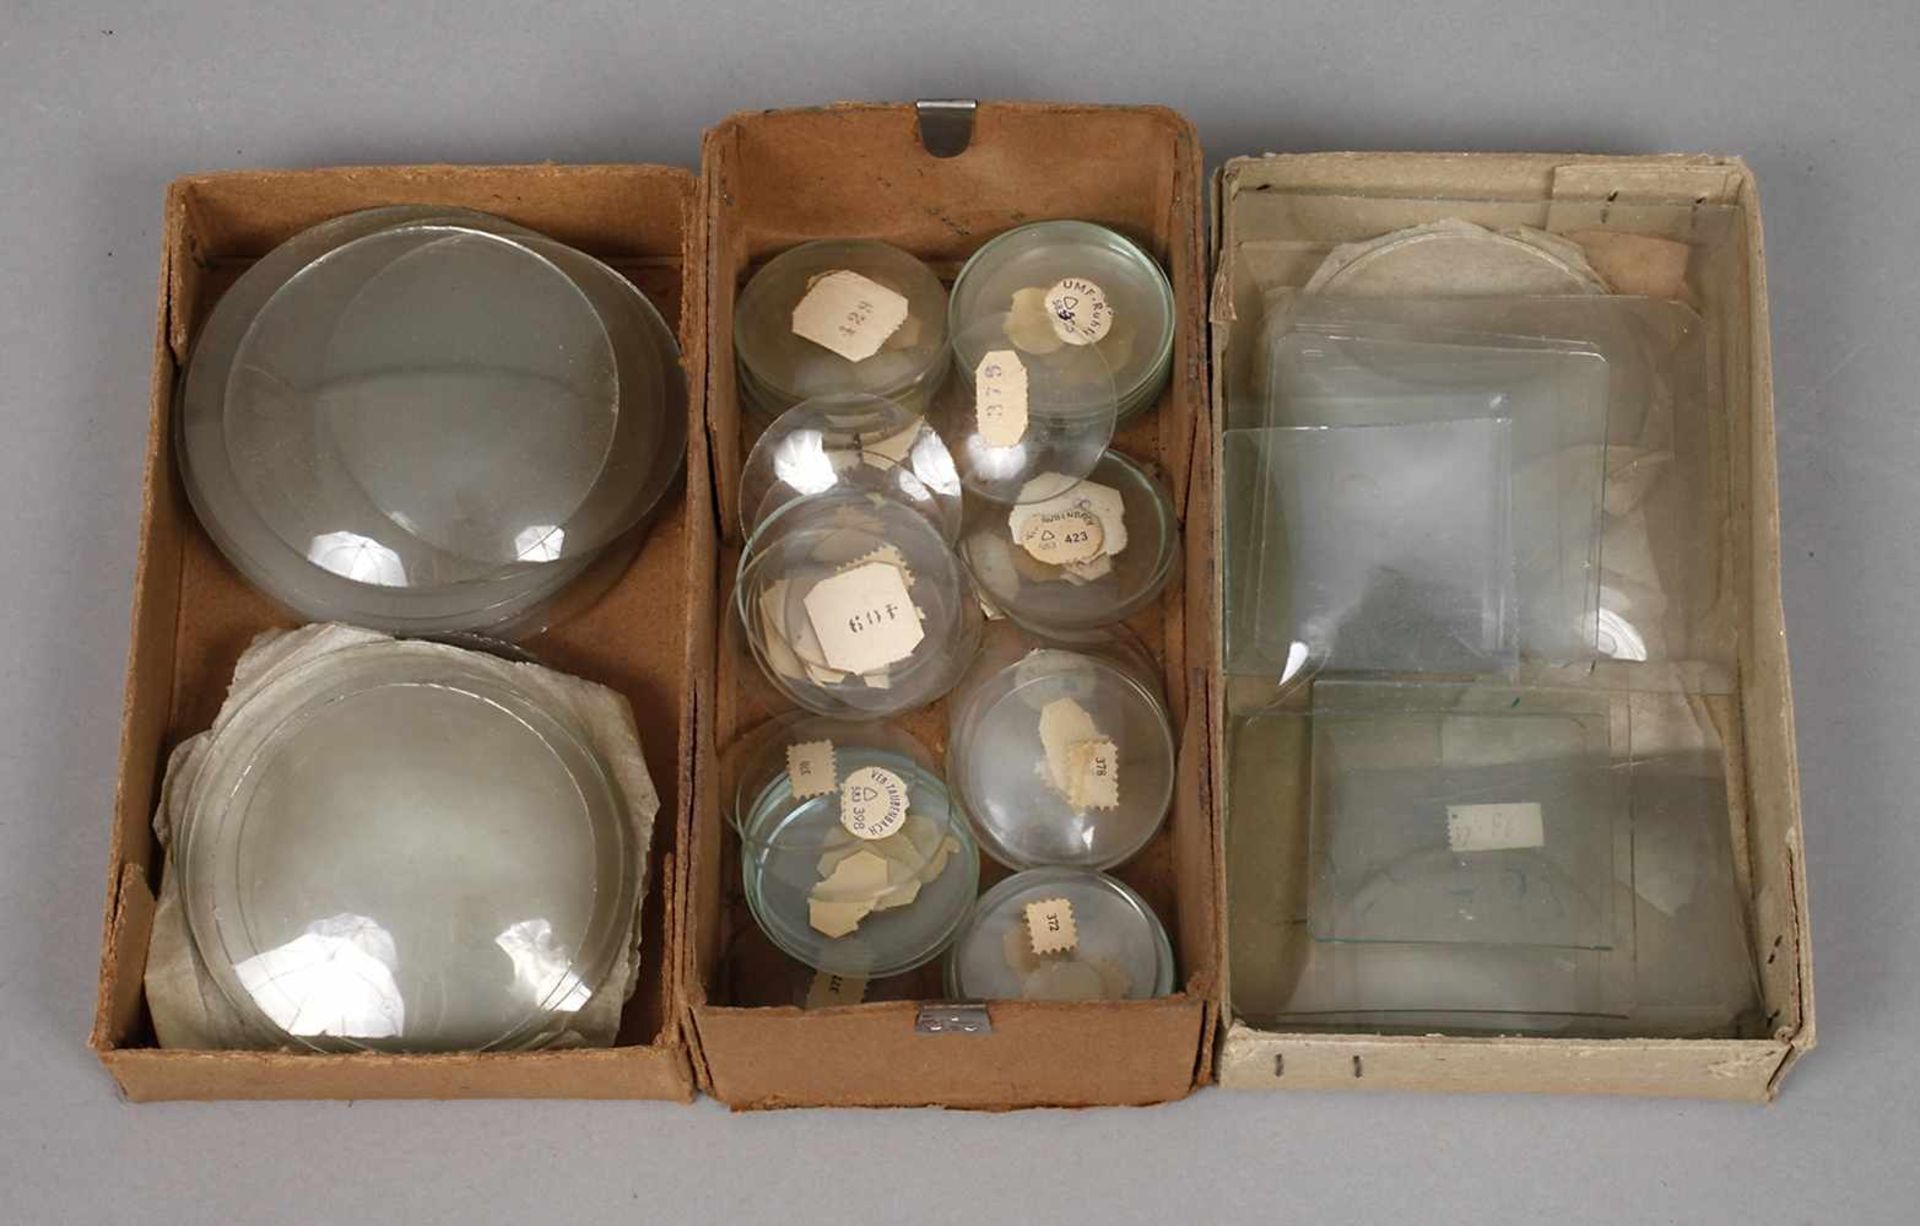 Posten Uhrengläserum 1960, Kiste mit Gläsern für Armbanduhren, eine Kiste runde Gläser für Wecker